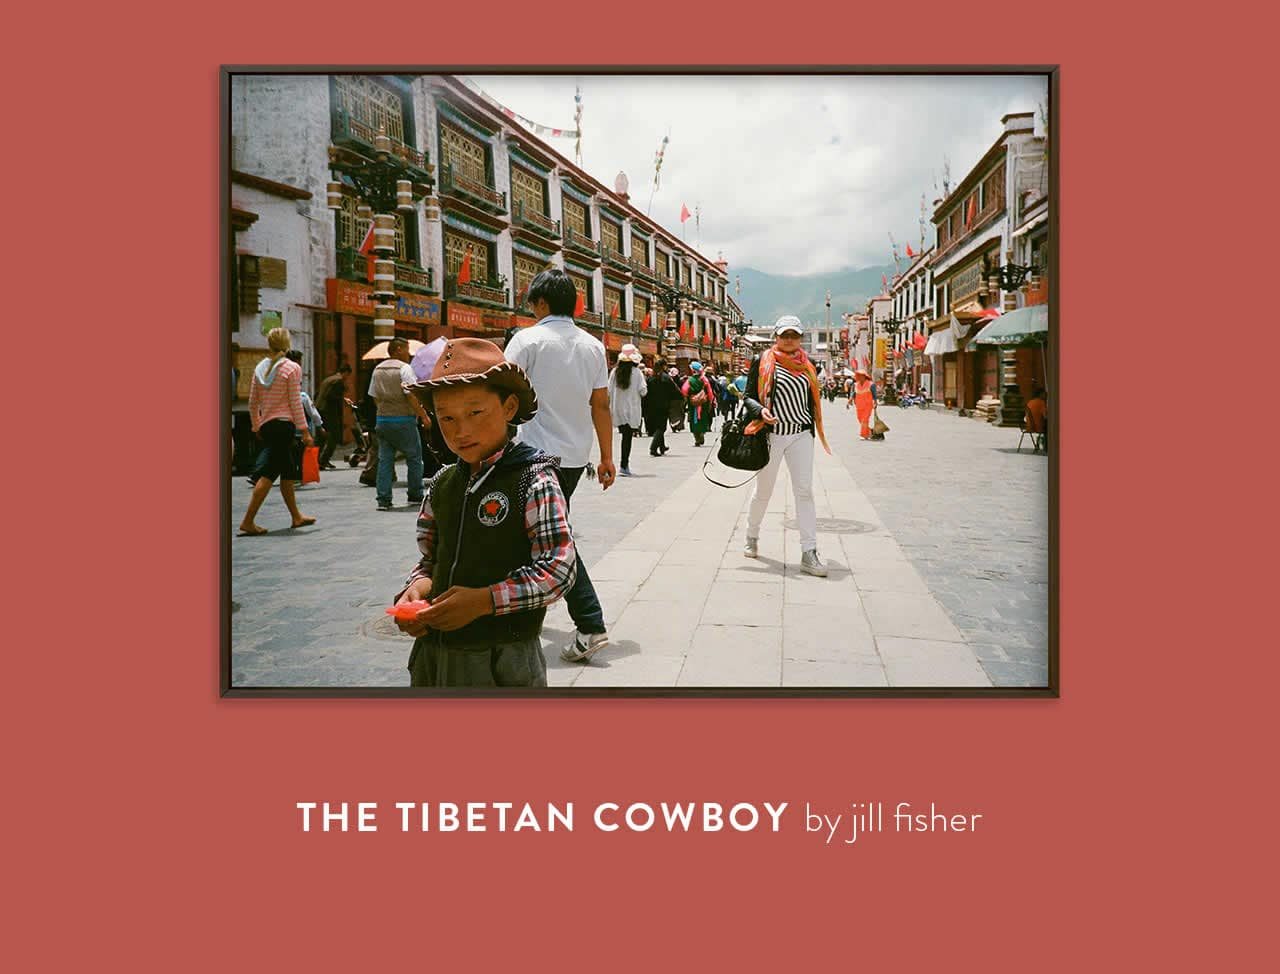 The Tibetan Cowboy